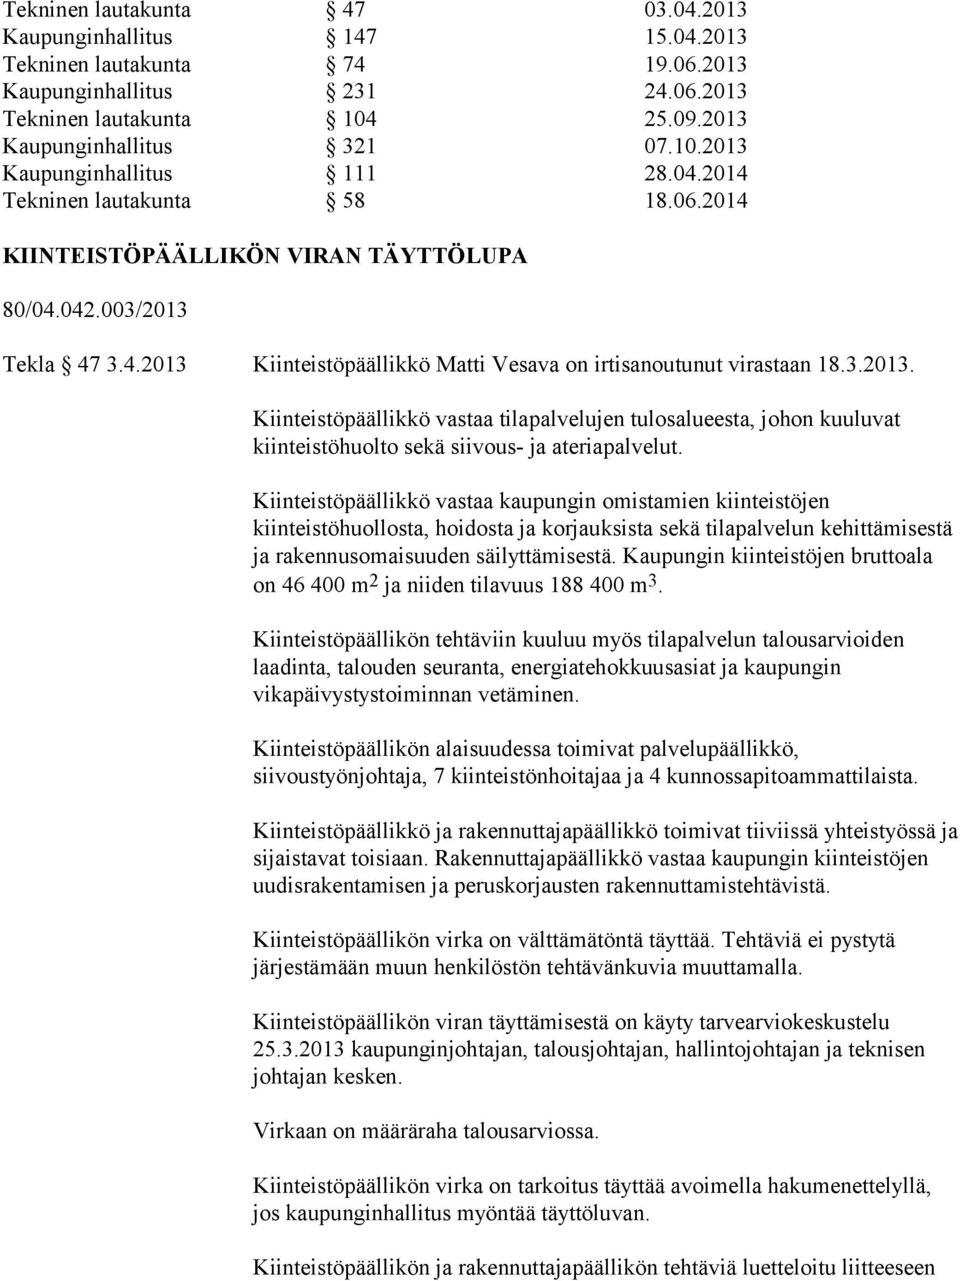 Tekla 47 3.4.2013 Kiinteistöpäällikkö Matti Vesava on irtisanoutunut virastaan 18.3.2013. Kiinteistöpäällikkö vastaa tilapalvelujen tulosalueesta, johon kuuluvat kiinteistöhuolto sekä siivous- ja ateriapalvelut.